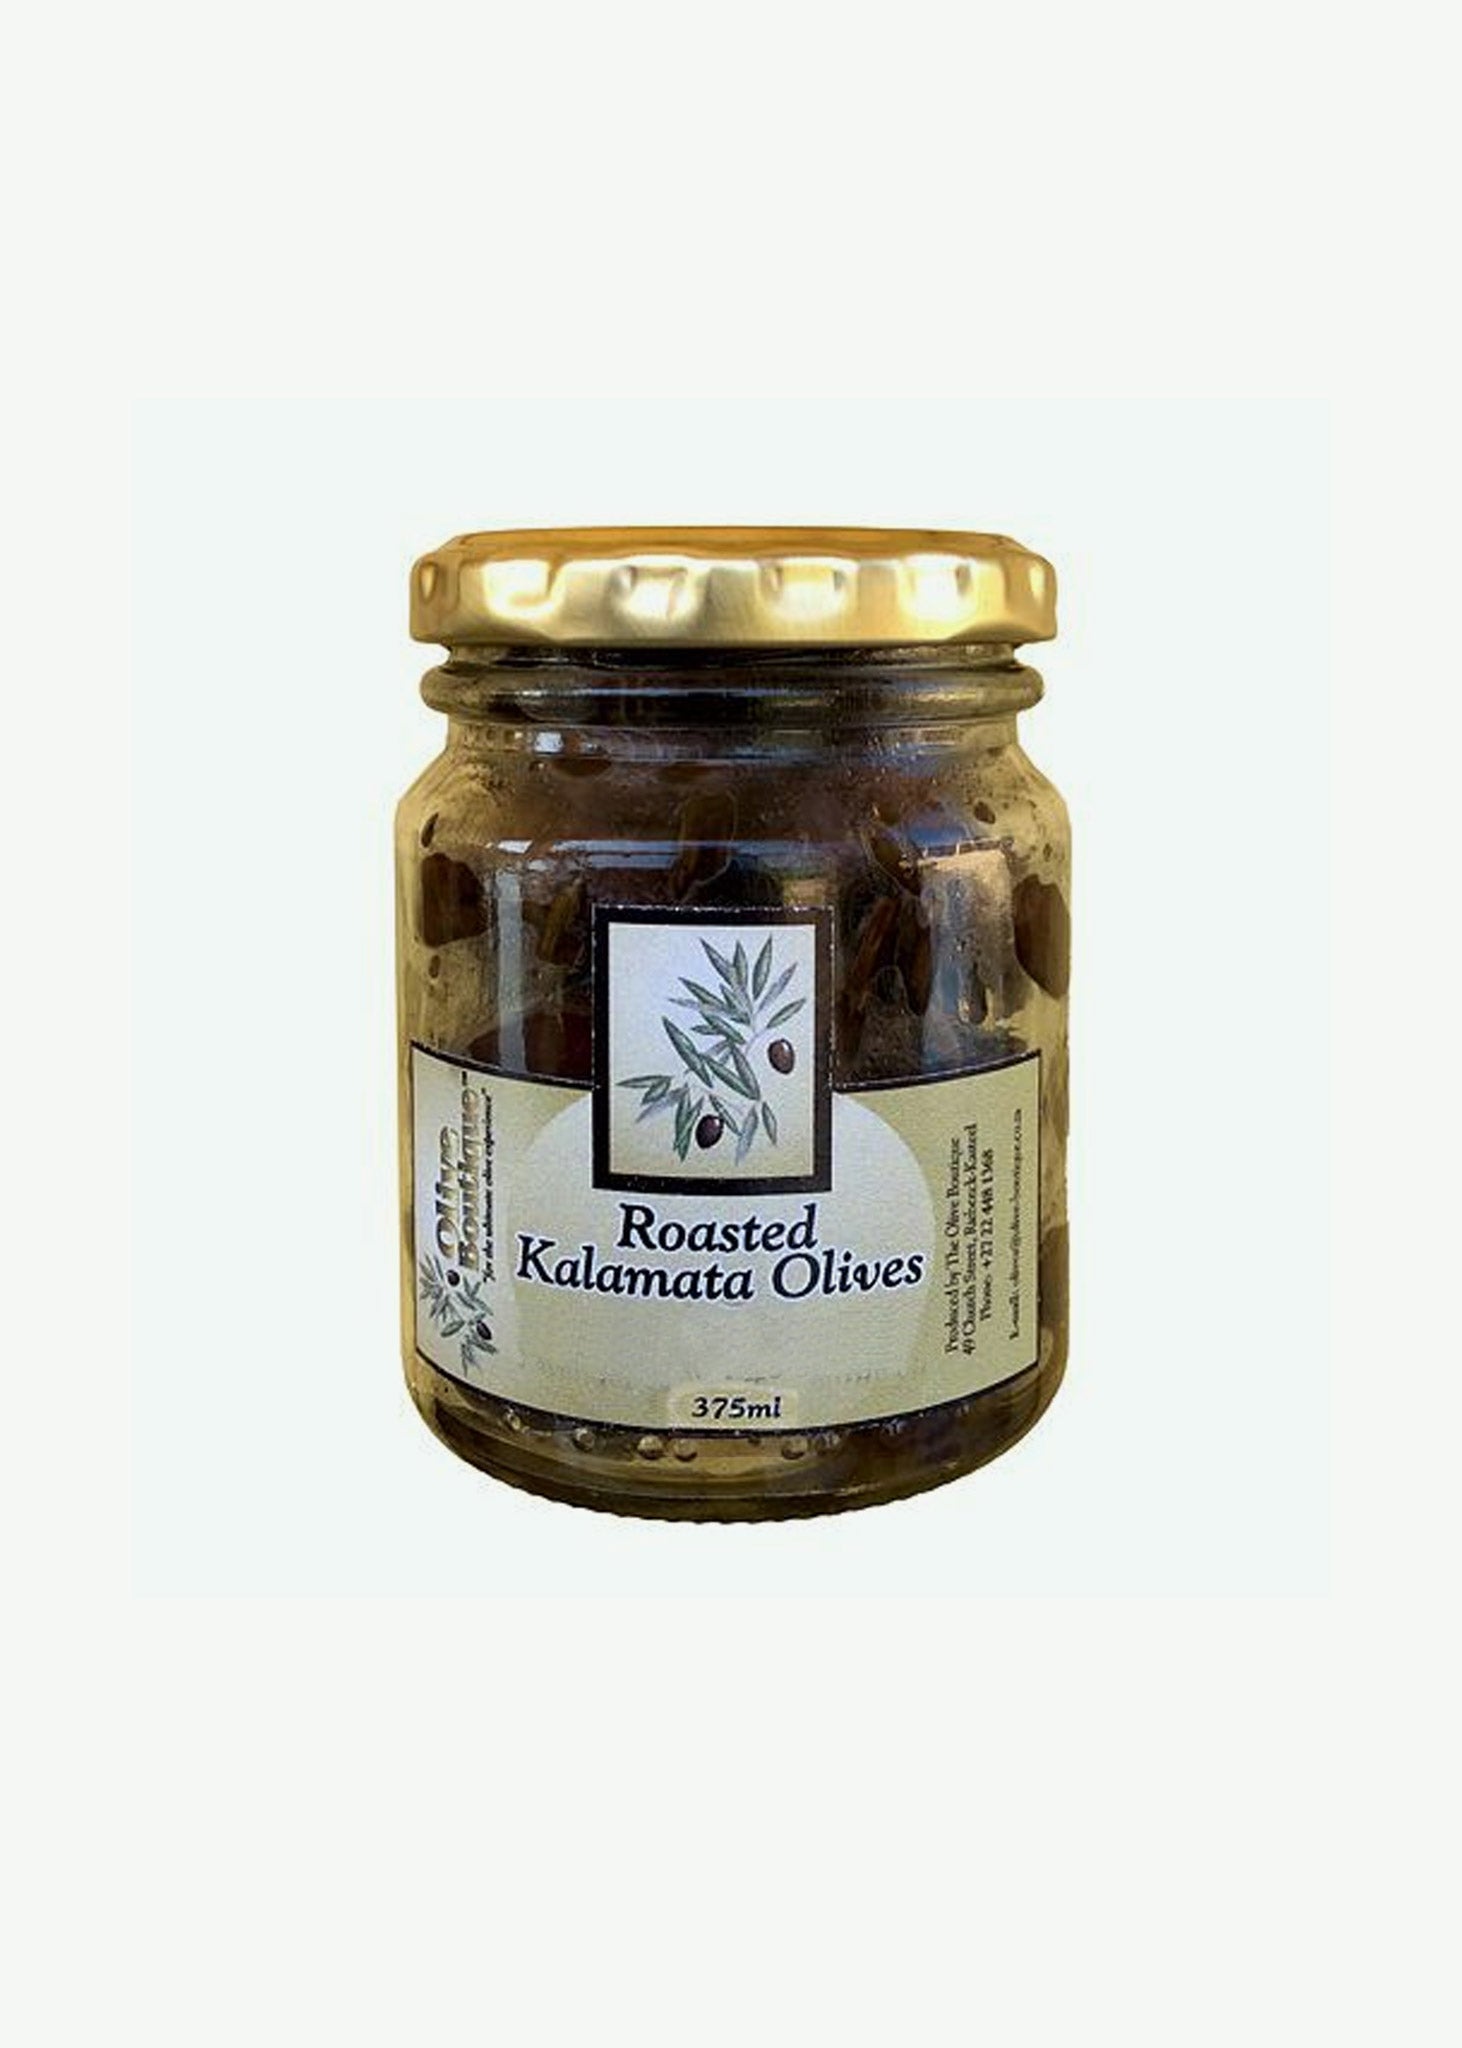 Kalamata Olives Roasted with Chilli 375ml